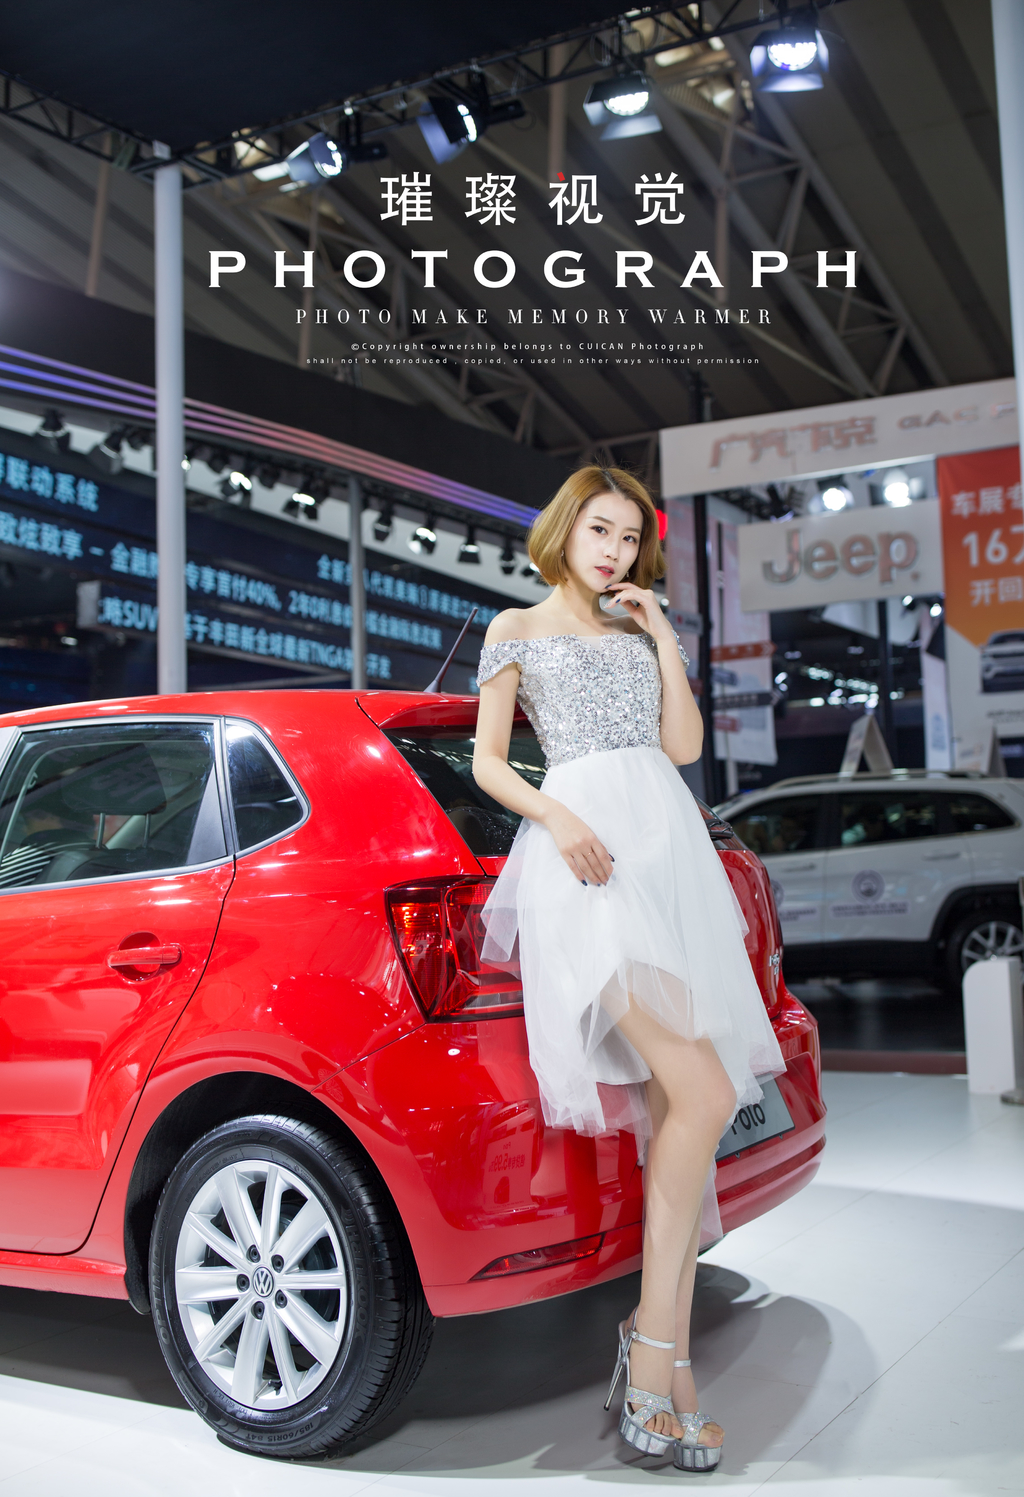 哈尔滨美女车模s型身材前凸后翘迷人笑容车展写真  第2张